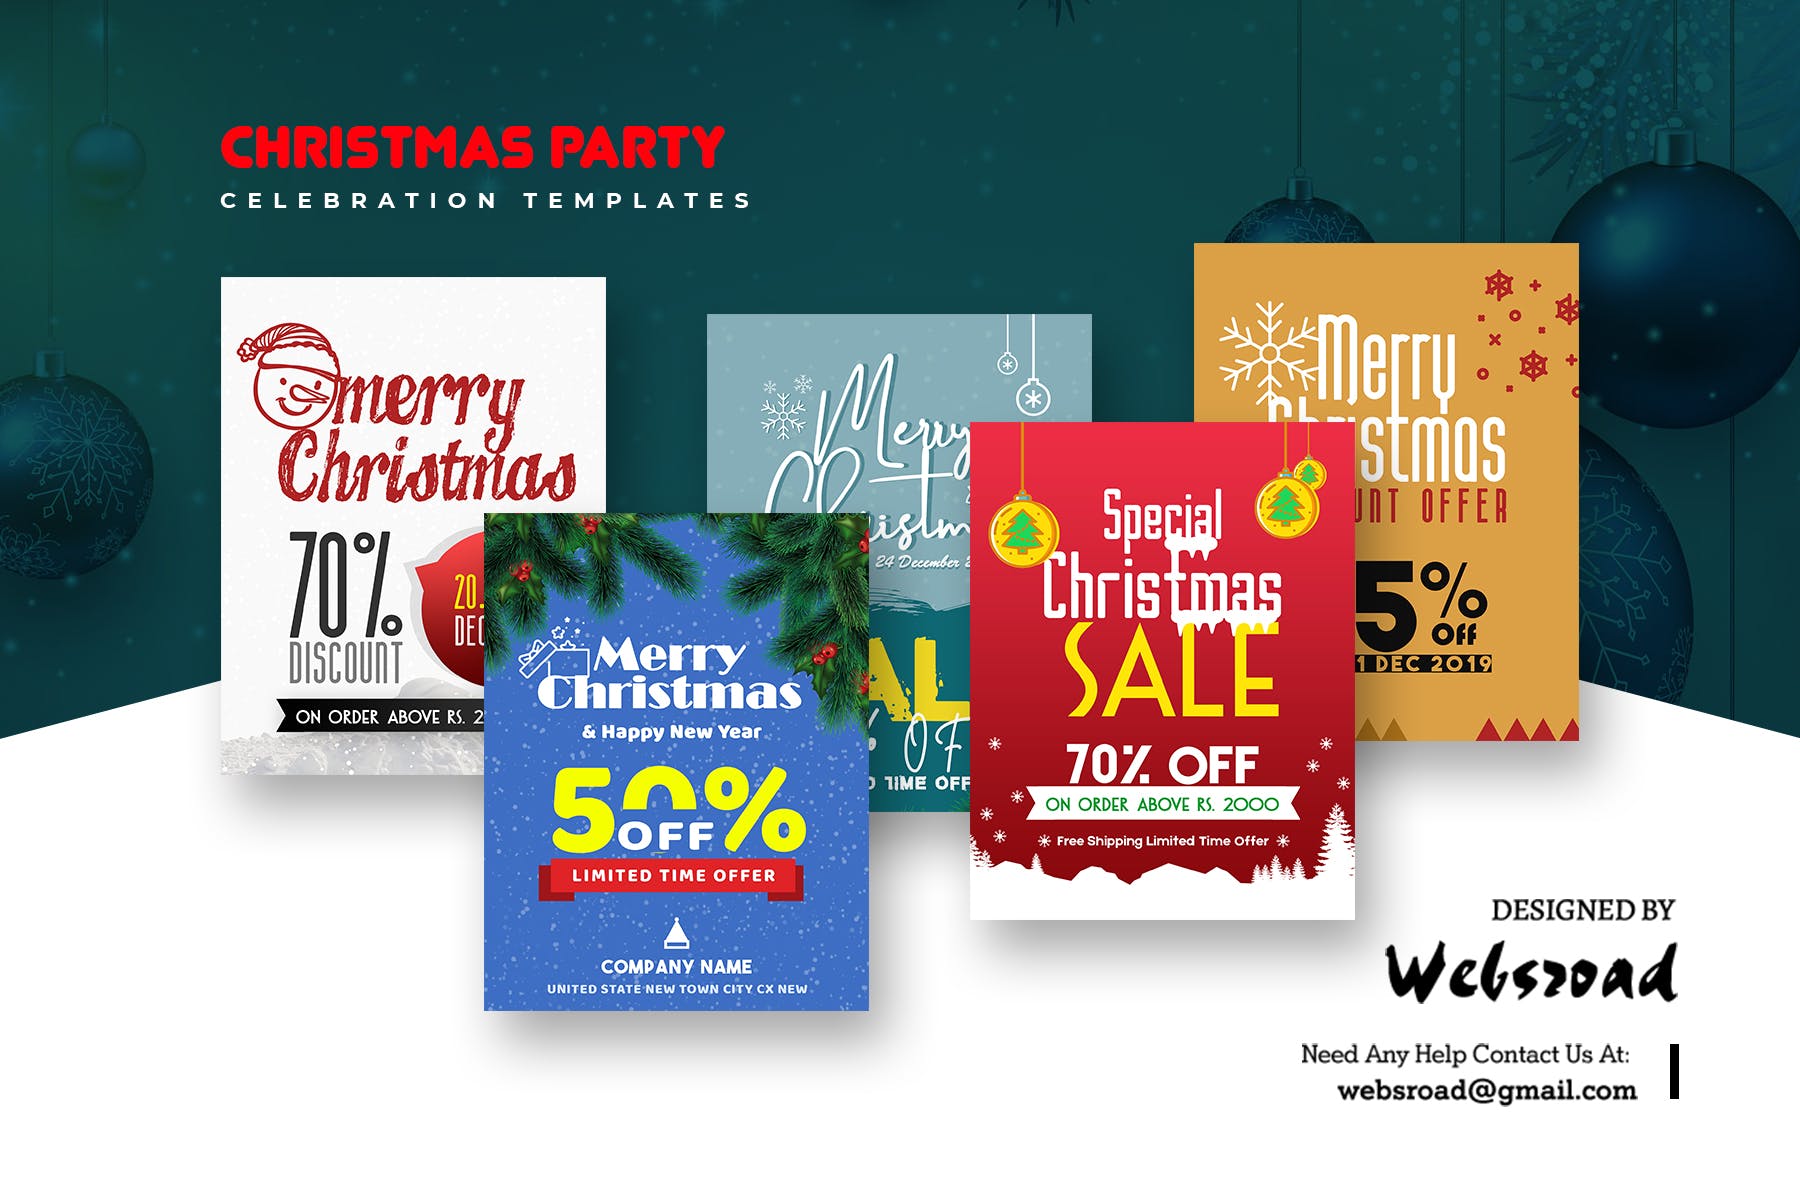 圣诞节主题促销活动普贤居精选广告模板合集 Christmas Party Celebration Templates插图